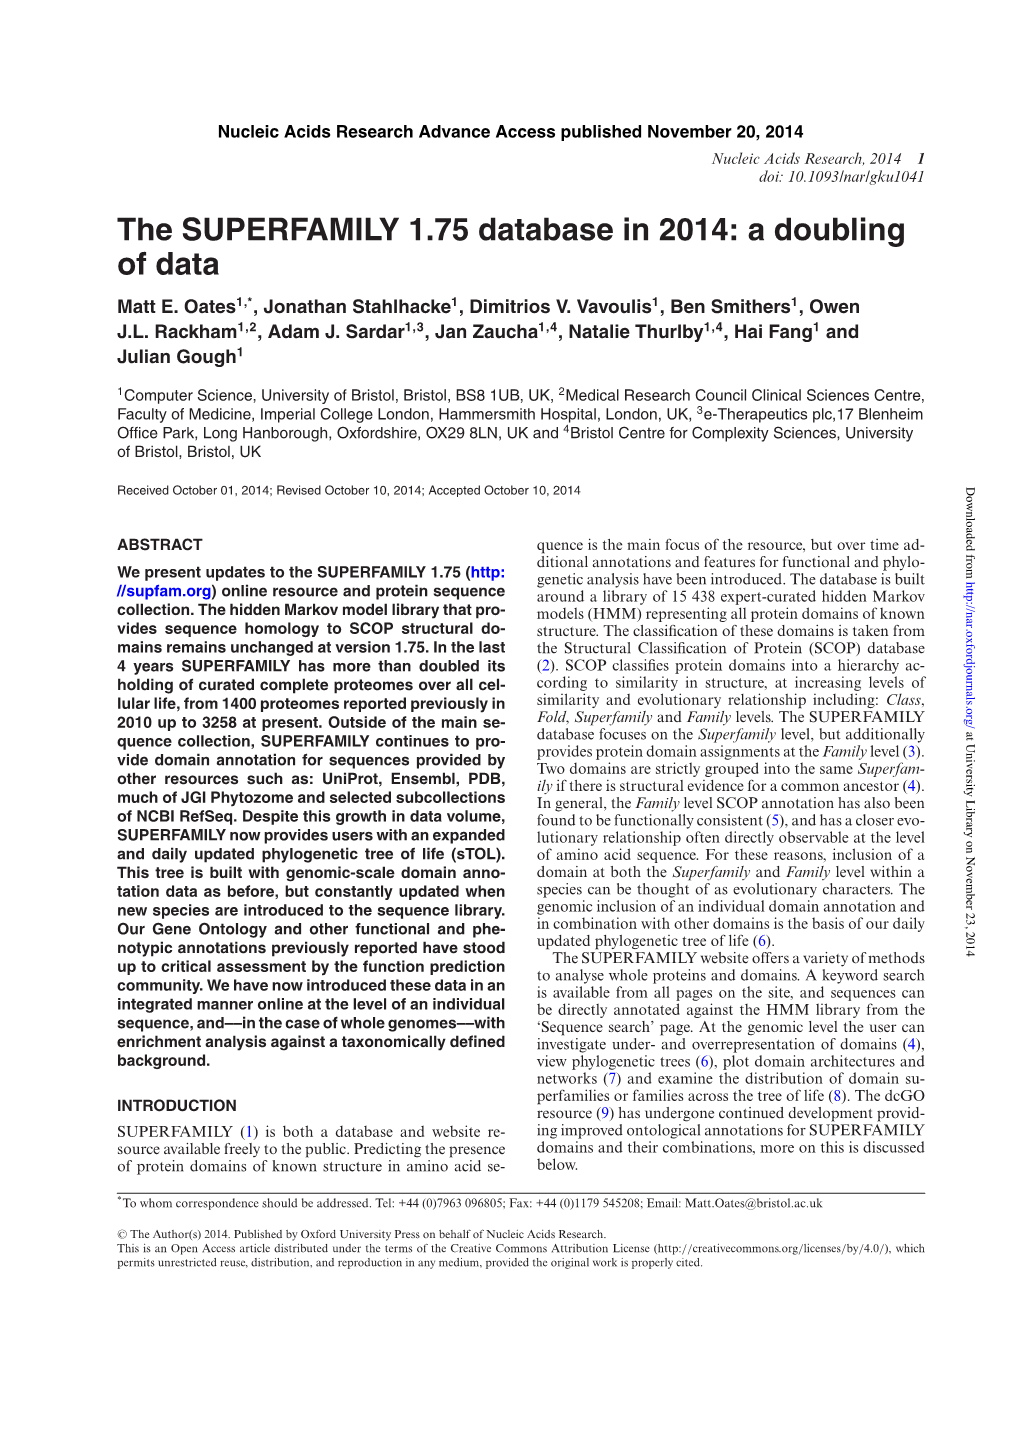 The SUPERFAMILY 1.75 Database in 2014: a Doubling of Data Matt E